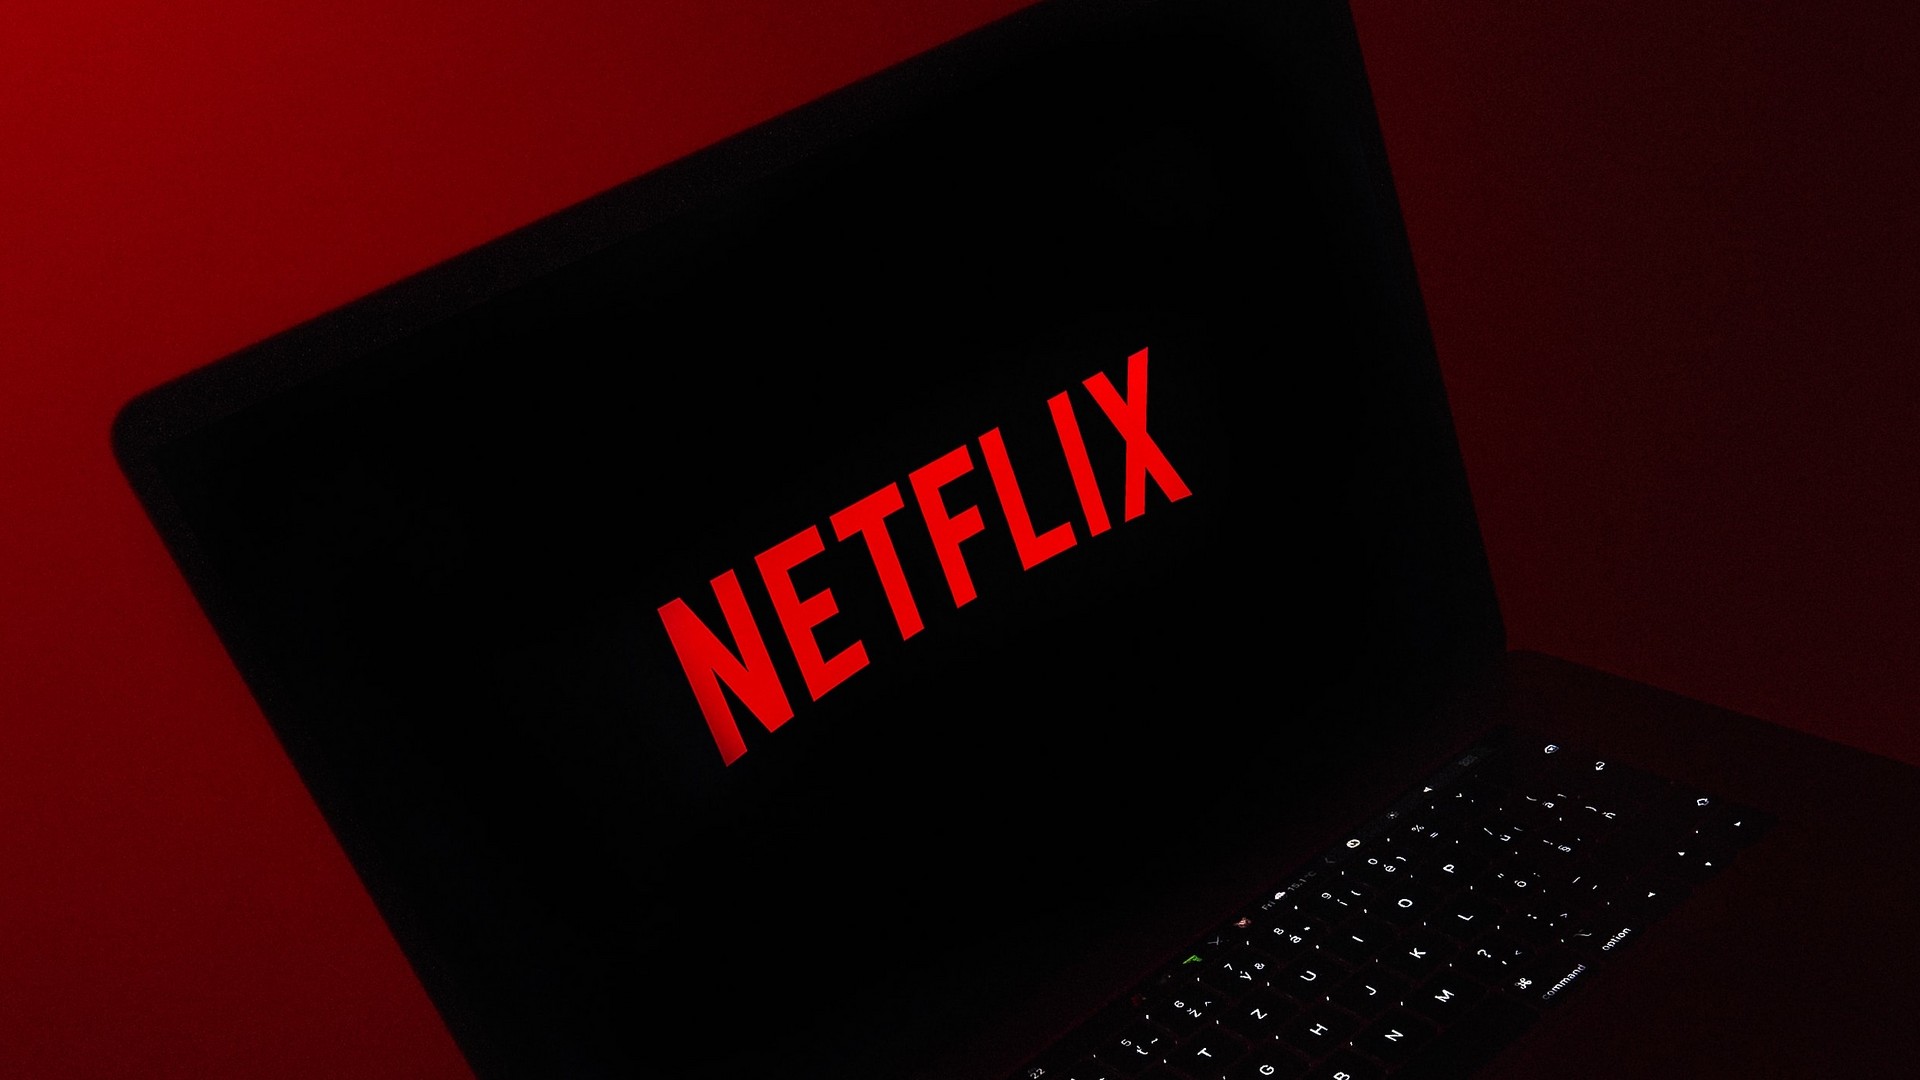 Netflix - Para saber mais sobre o novo plano Básico com